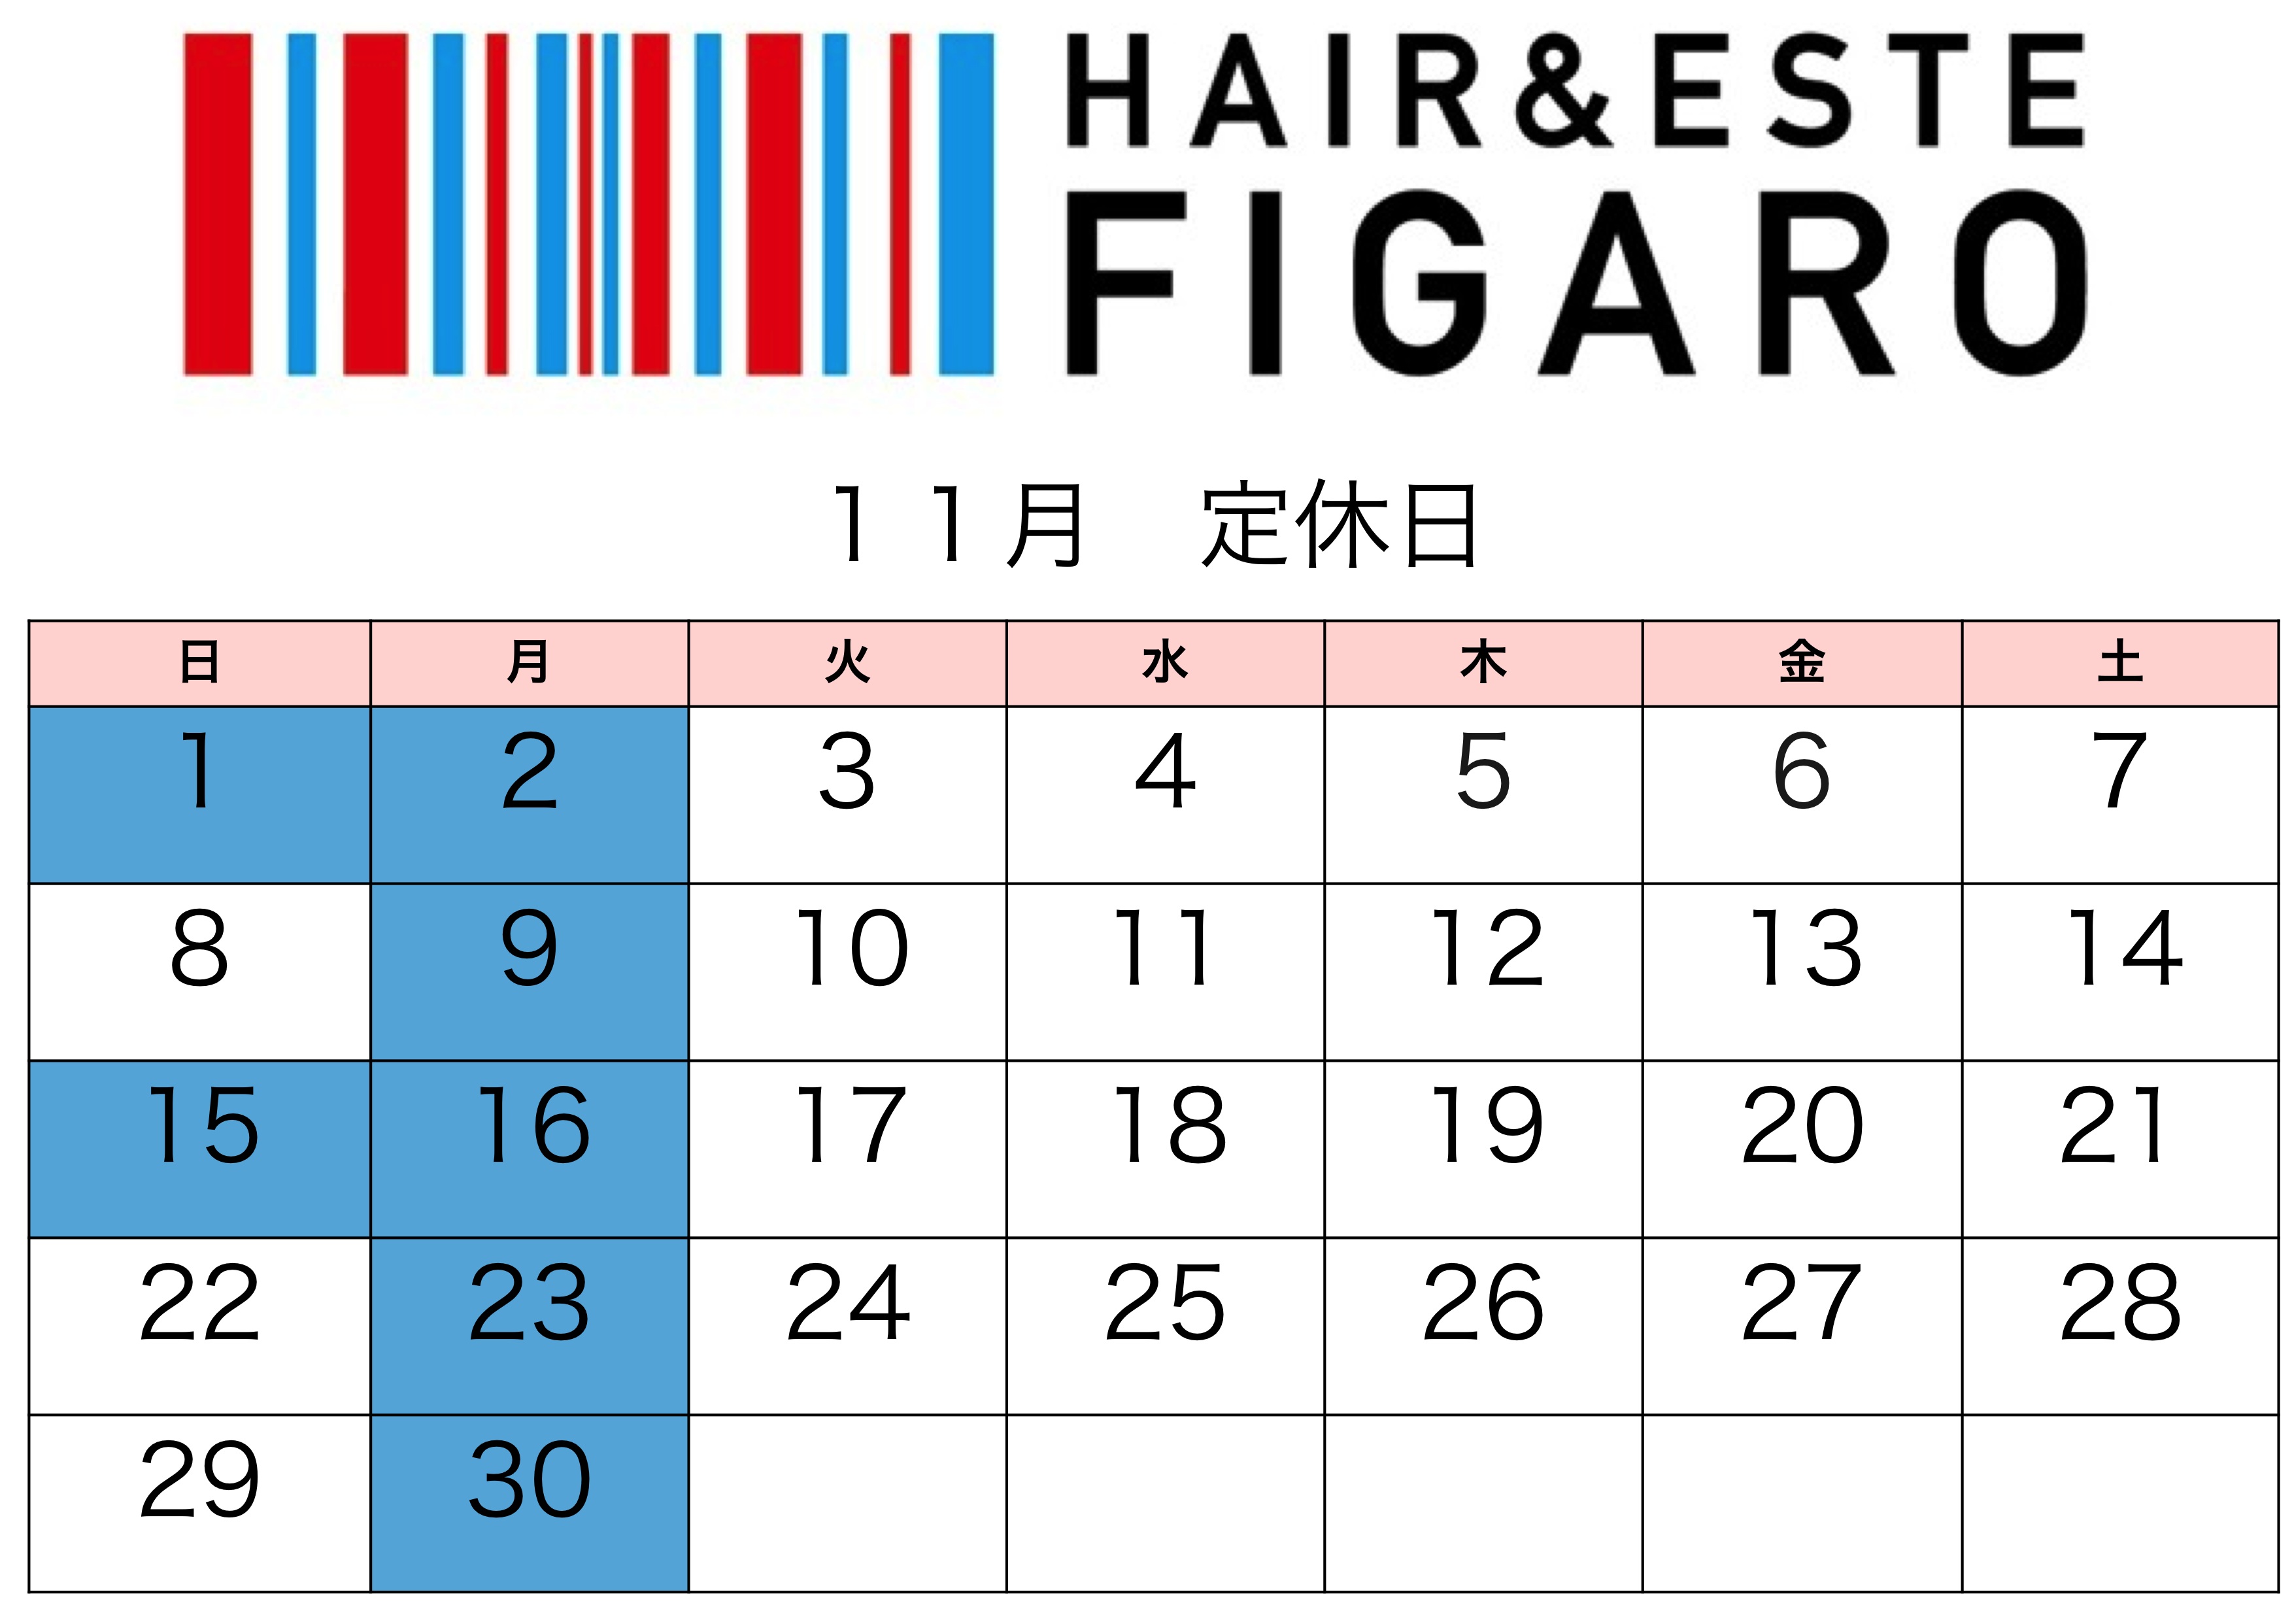 http://figaro-hair.com/blog/2015%E3%80%8211.jpg